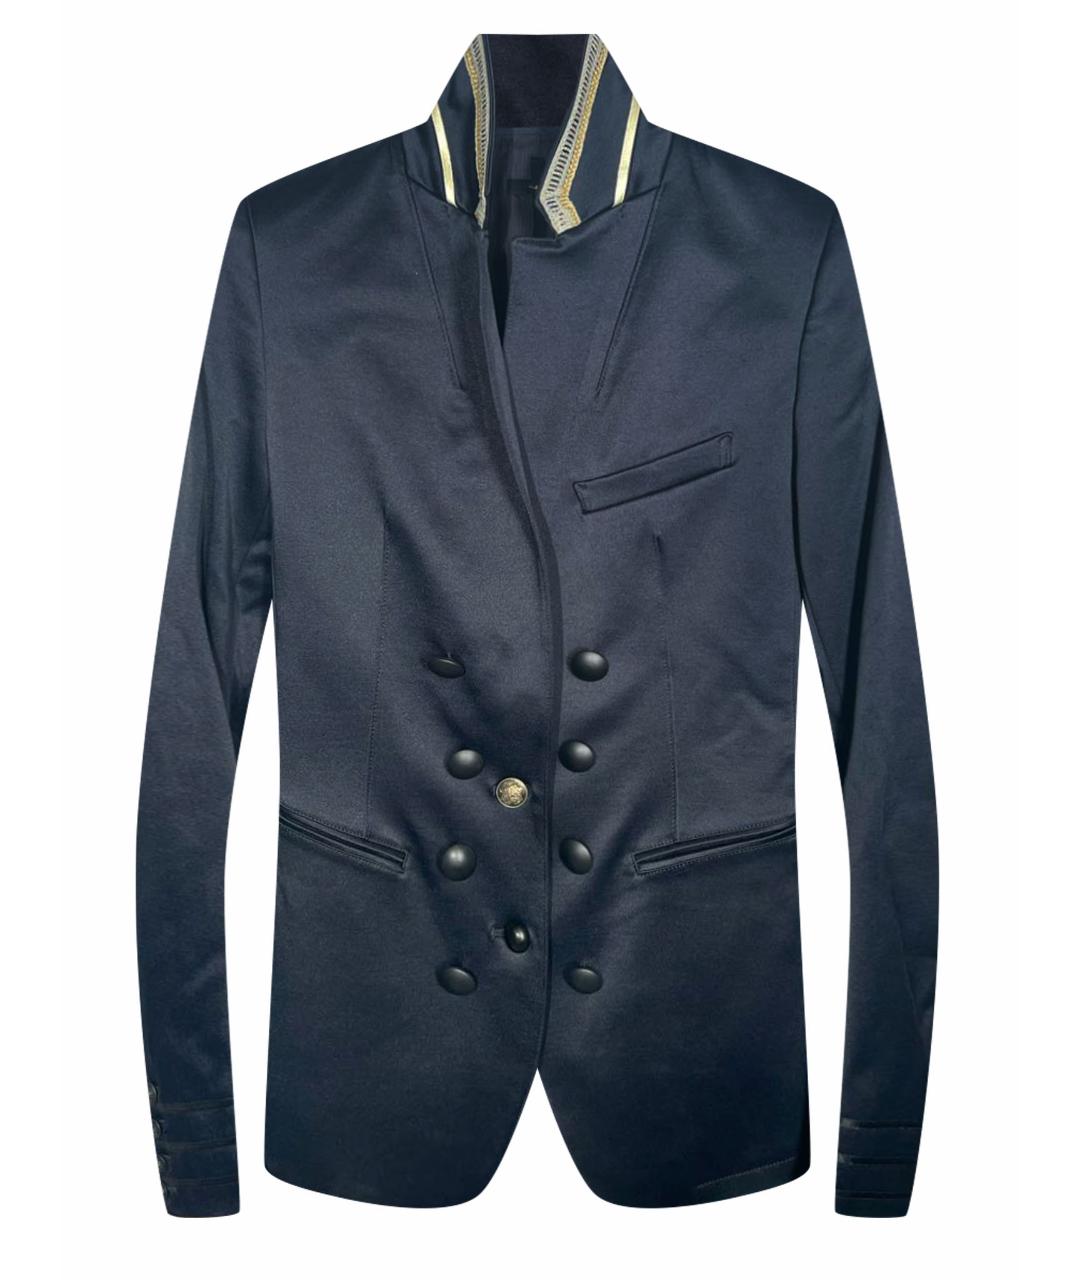 LGB Темно-синий жакет/пиджак, фото 1